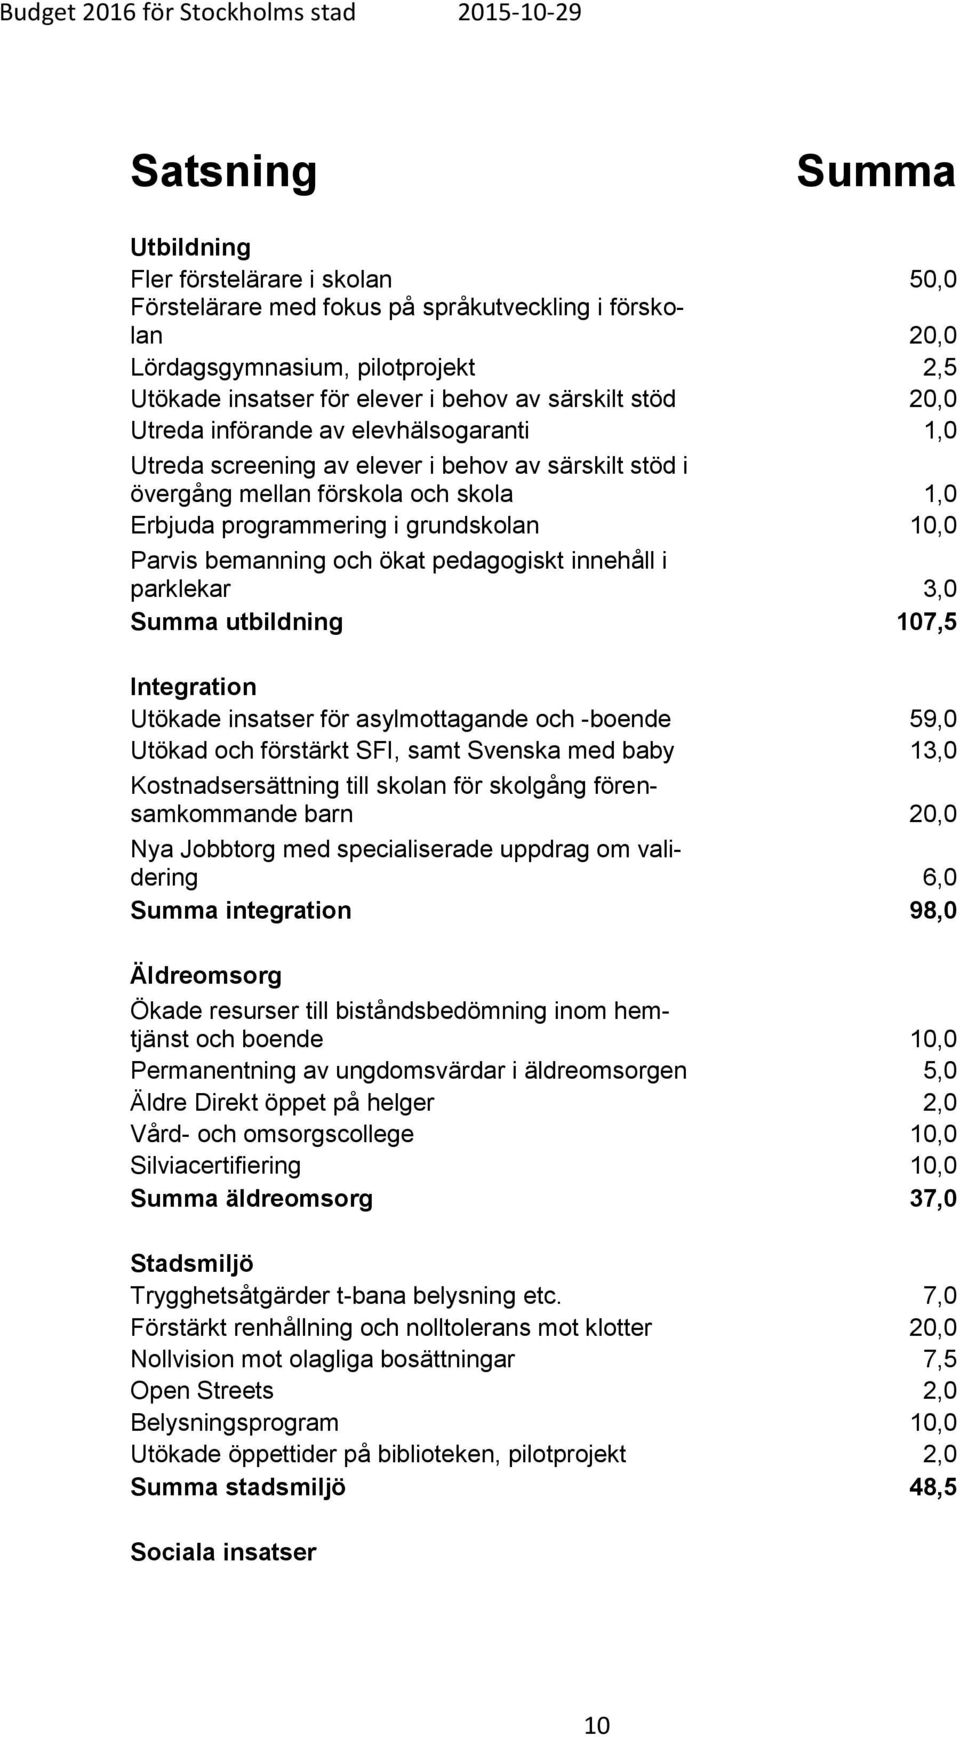 bemanning och ökat pedagogiskt innehåll i parklekar 3,0 Summa utbildning 107,5 Integration Utökade insatser för asylmottagande och -boende 59,0 Utökad och förstärkt SFI, samt Svenska med baby 13,0